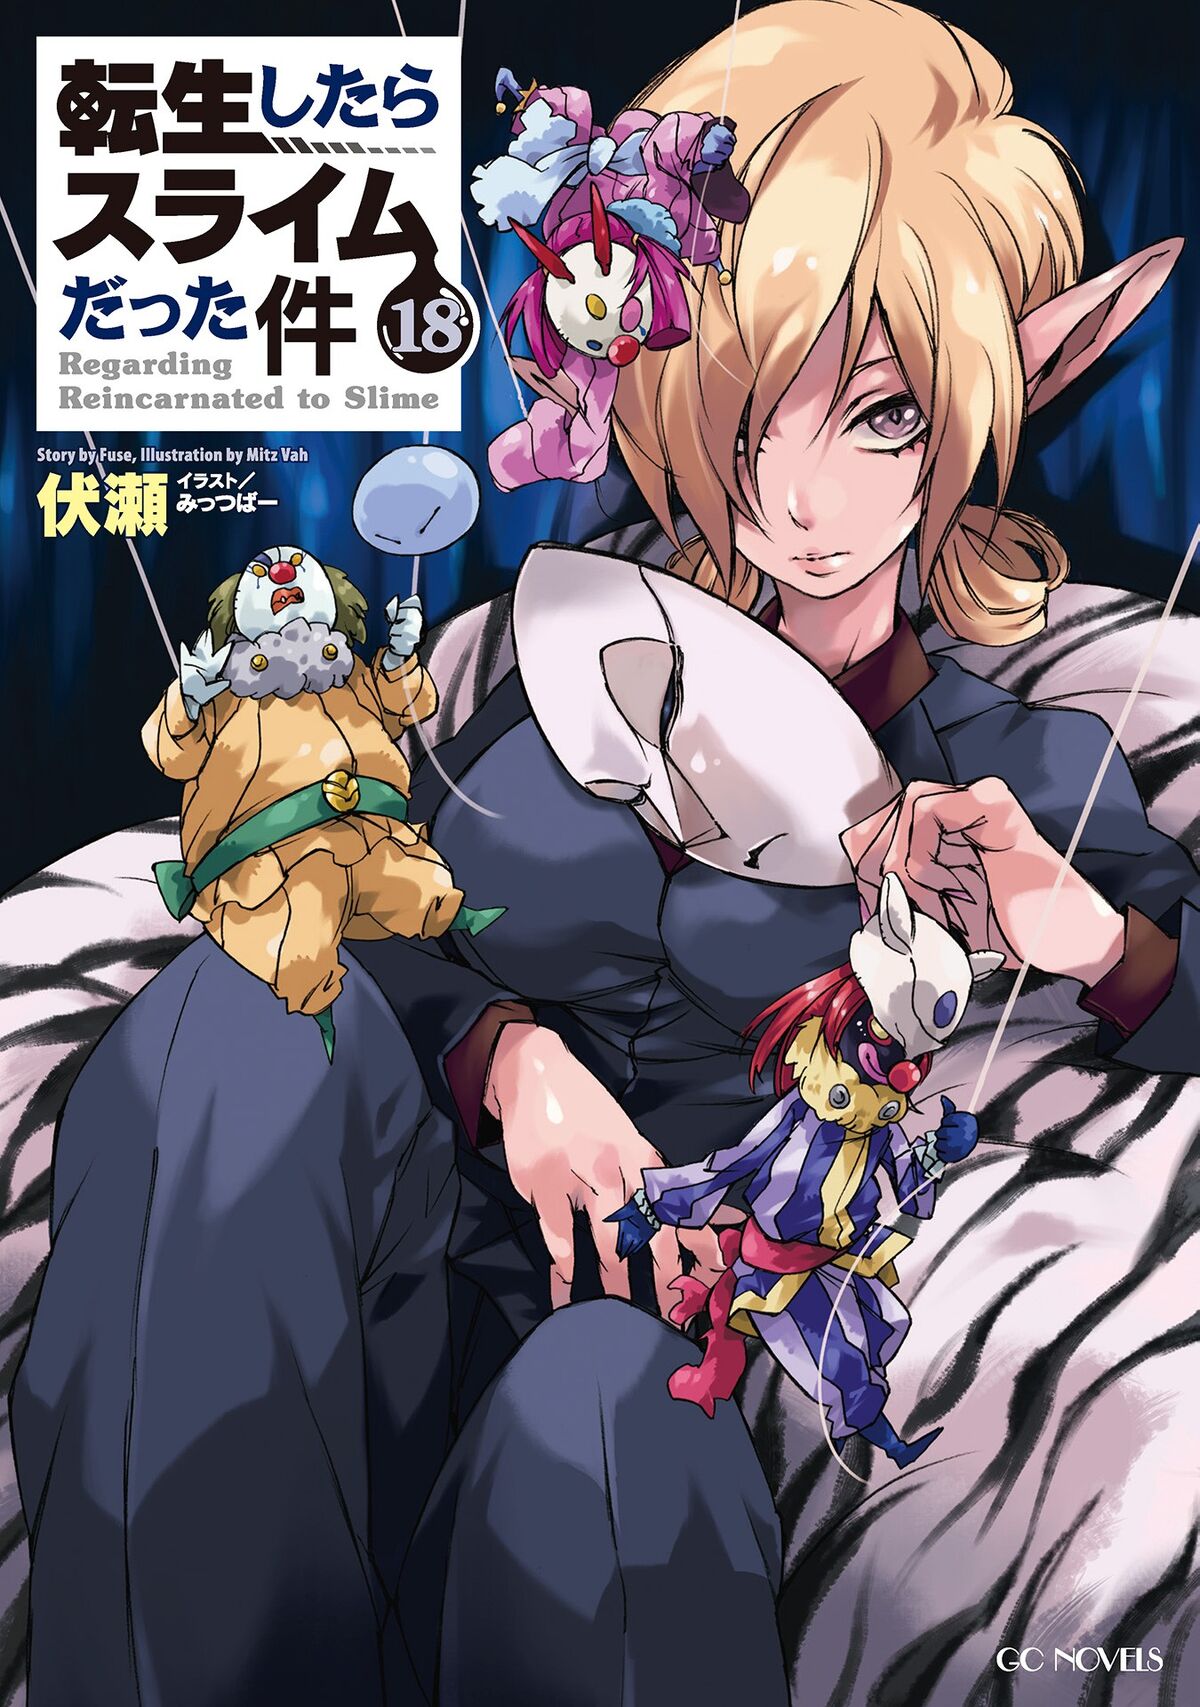 Manga Volume 11, Tensei Shitara Slime Datta Ken Wiki